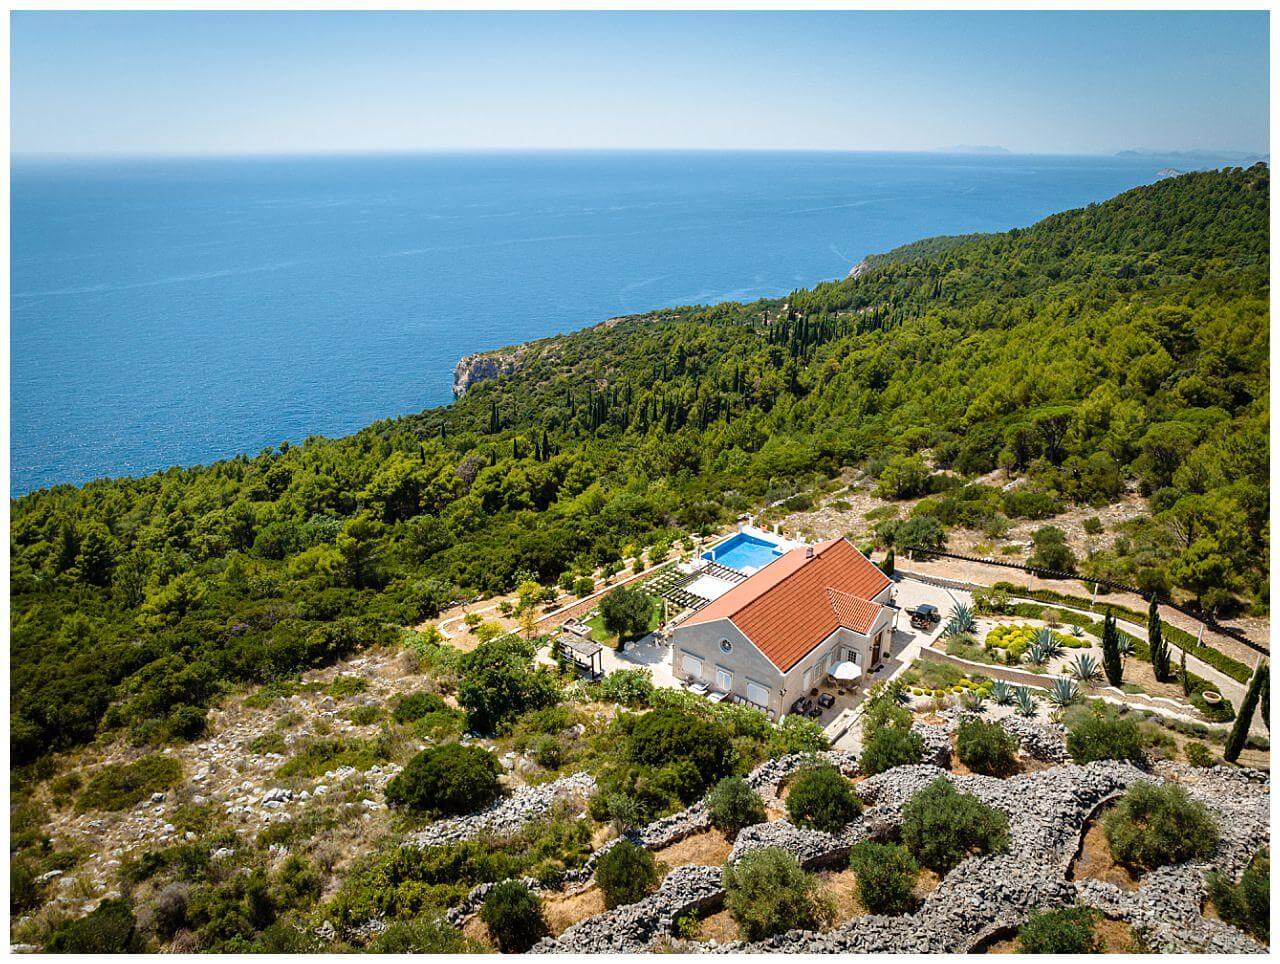 Private Villa mit Pool und dem Blick aufs Meer für Hochzeiten in Kroatien